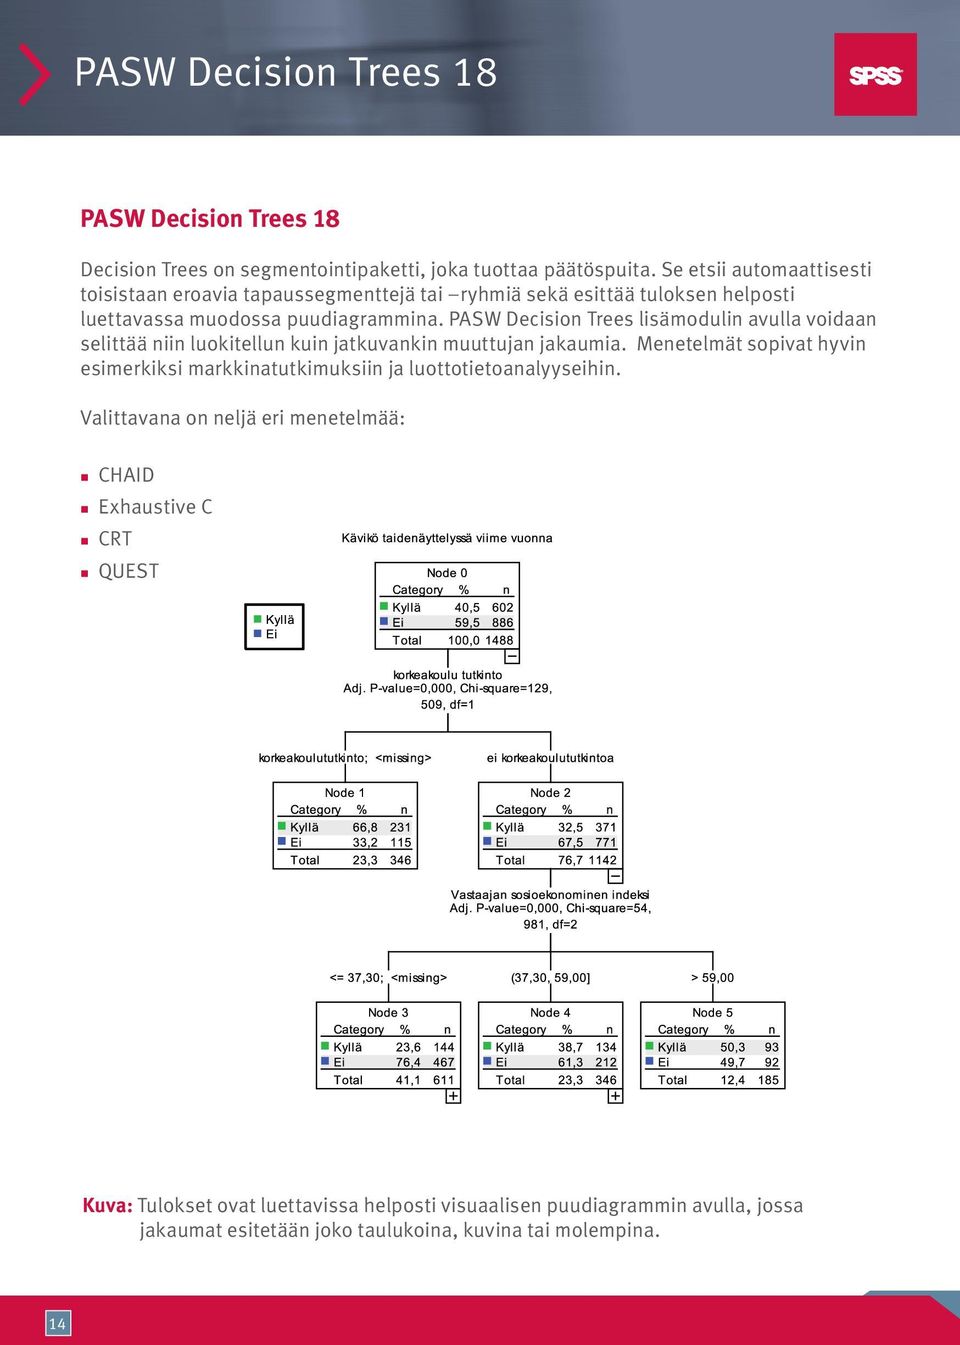 PASW Decision Trees lisämodulin avulla voidaan selittää niin luokitellun kuin jatkuvankin muuttujan jakaumia.